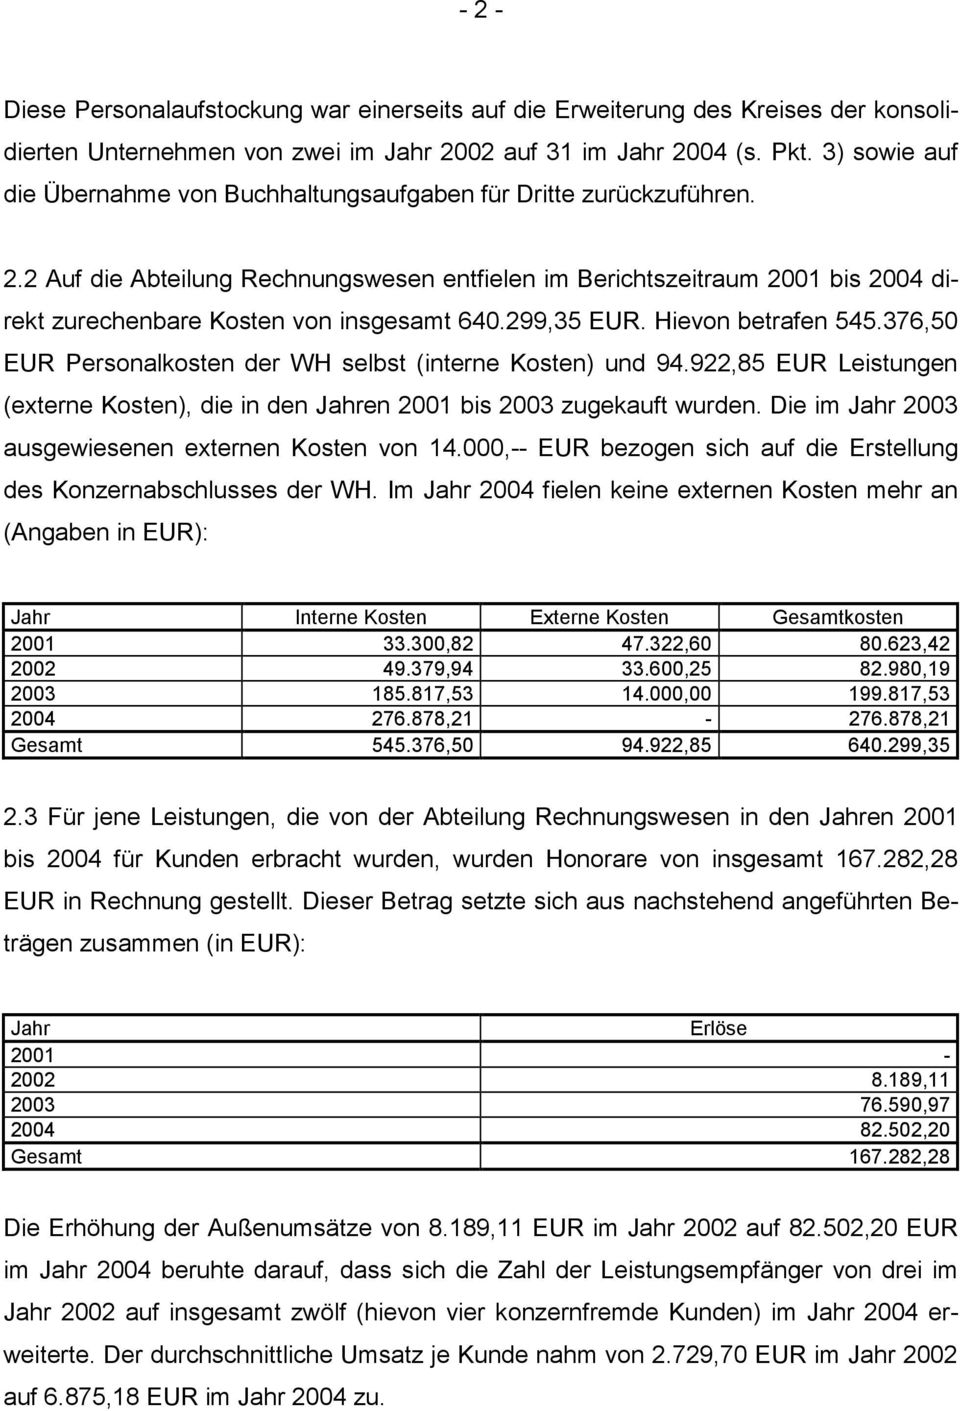 2 Auf die Abteilung Rechnungswesen entfielen im Berichtszeitraum 2001 bis 2004 direkt zurechenbare Kosten von insgesamt 640.299,35 EUR. Hievon betrafen 545.